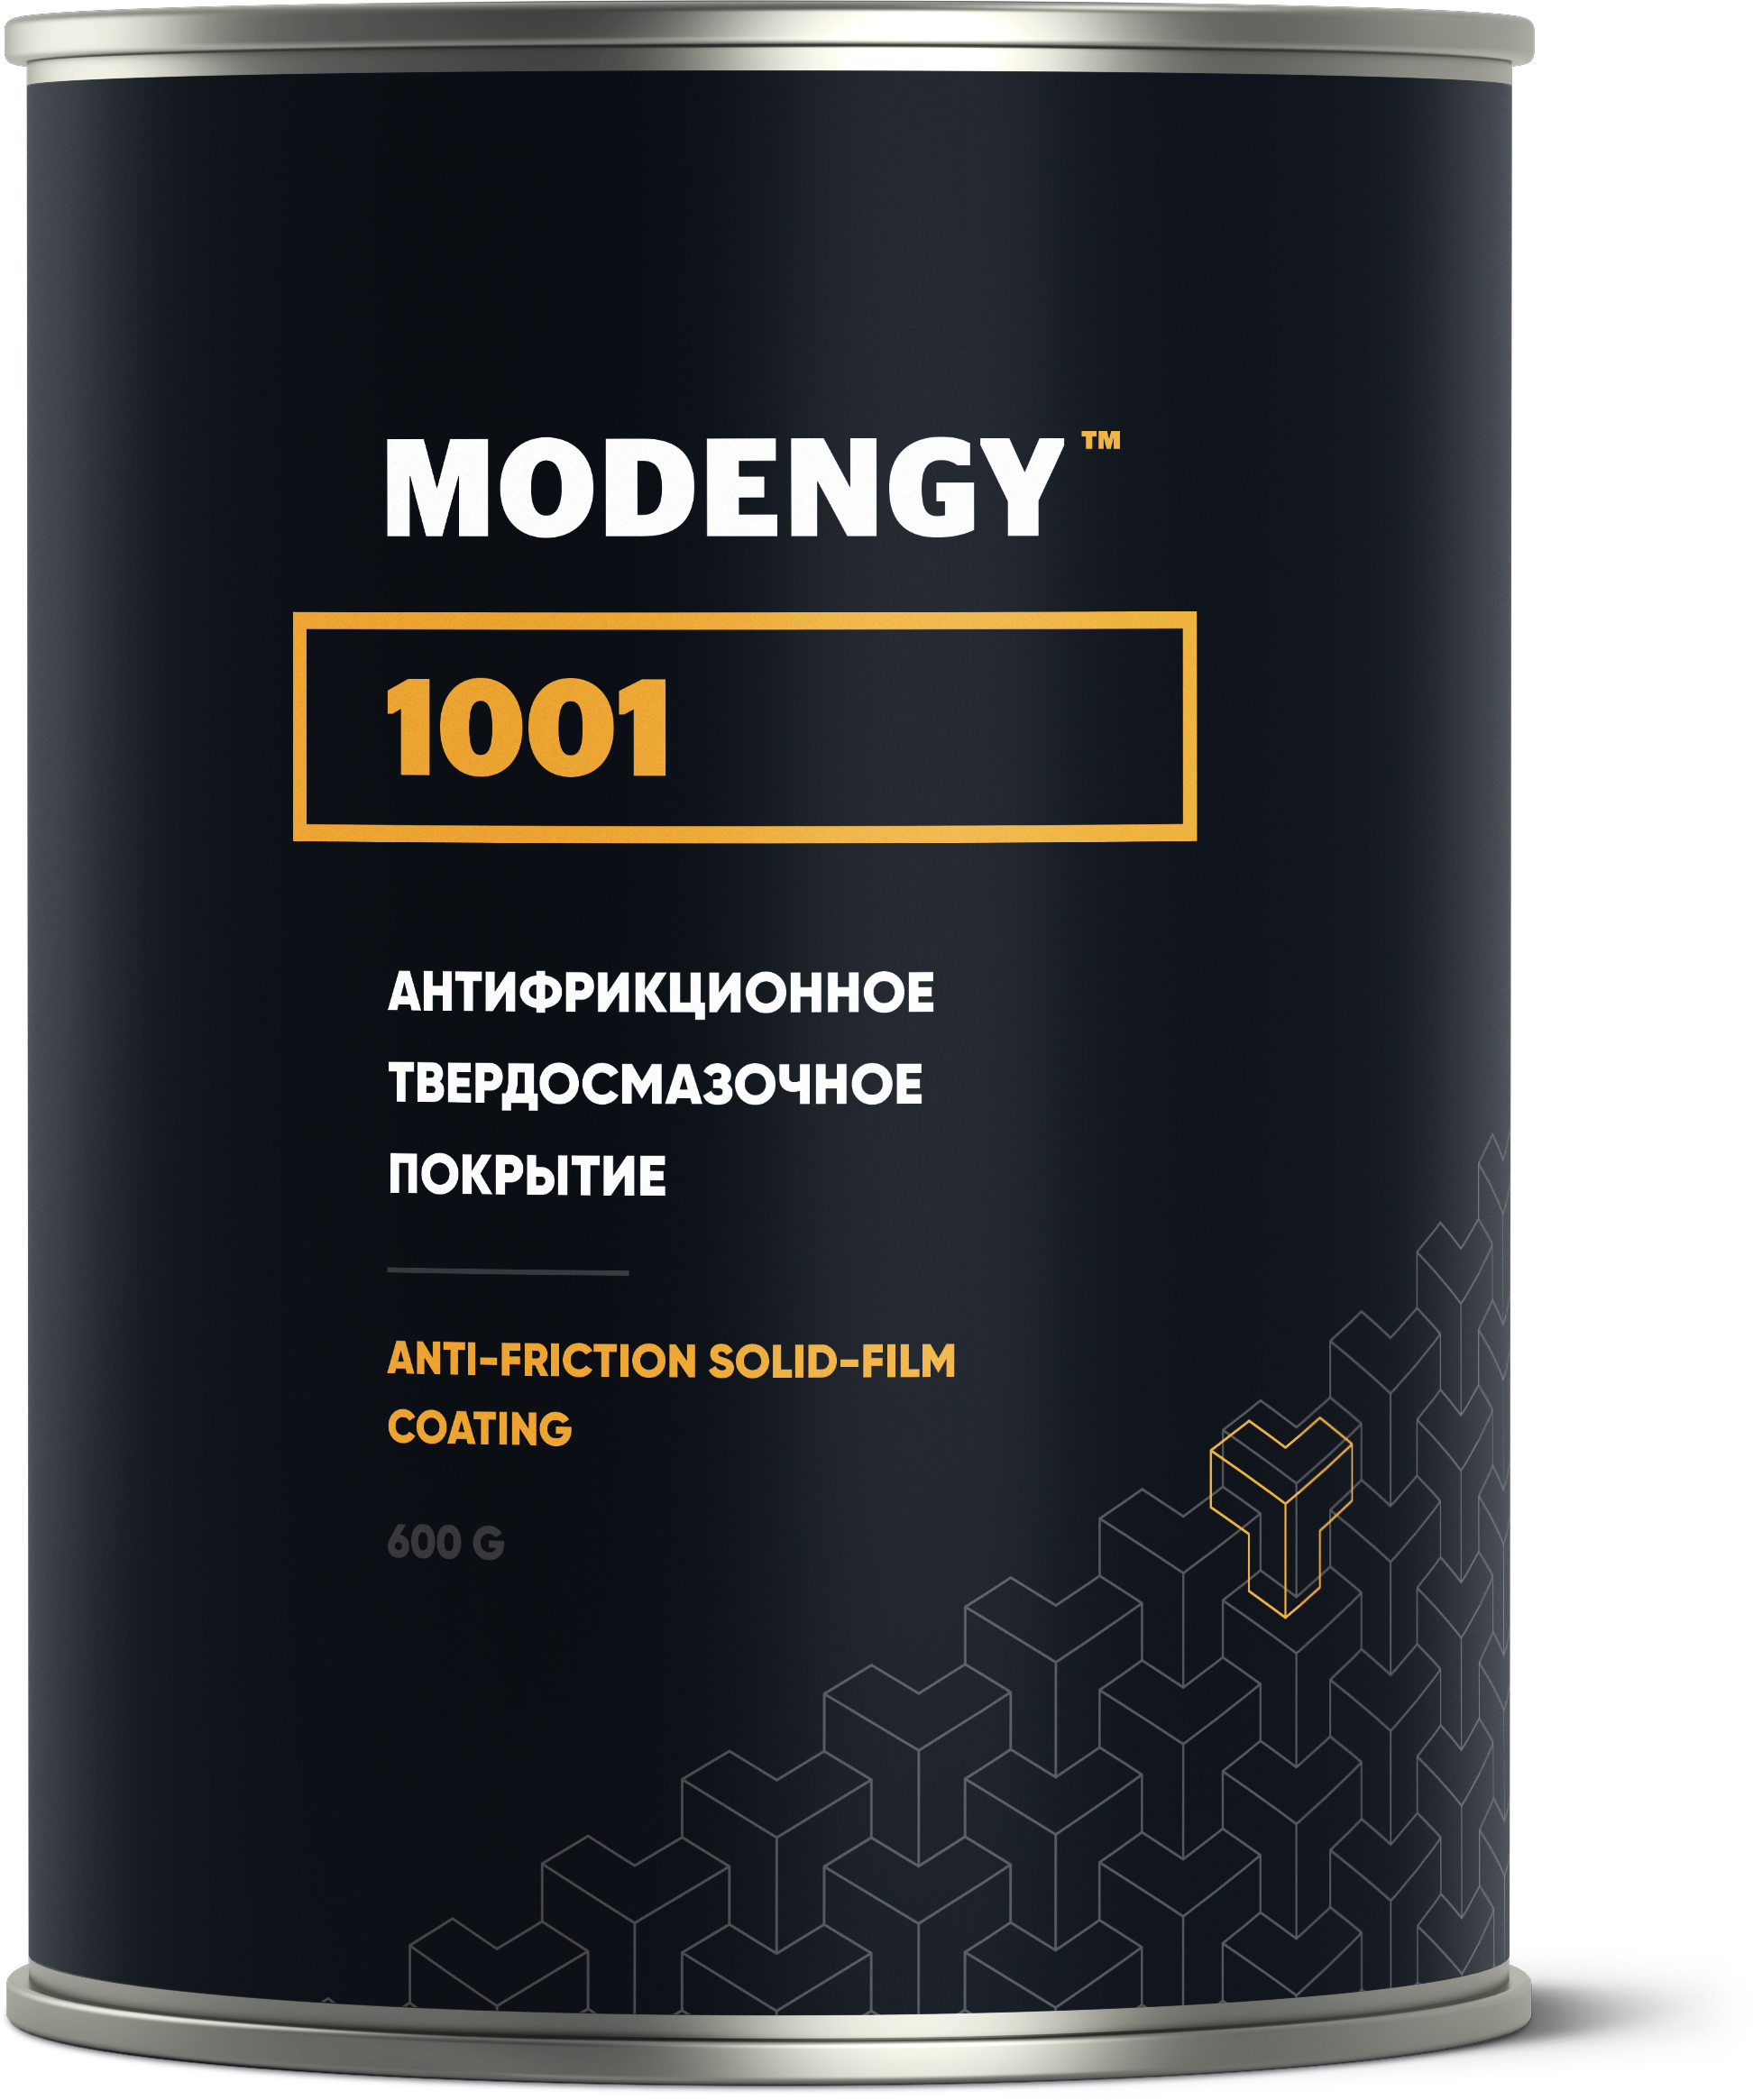 Антифрикционное твердосмазочное покрытие MODENGY 1001 (600 г)